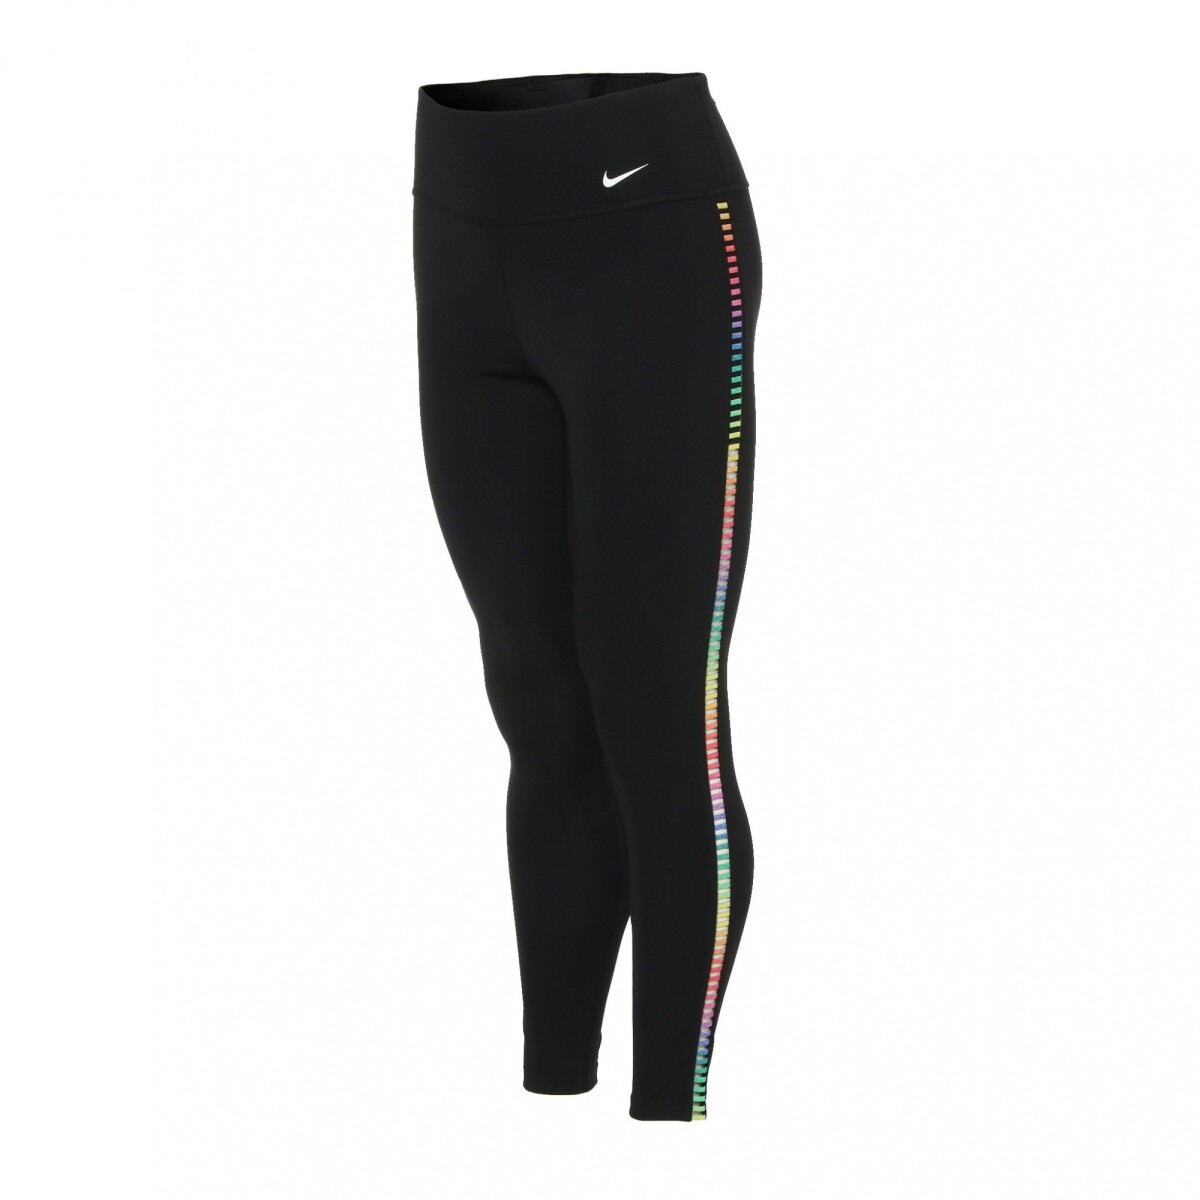 Calza Nike One Rainbow Running dama Negro - S/C 